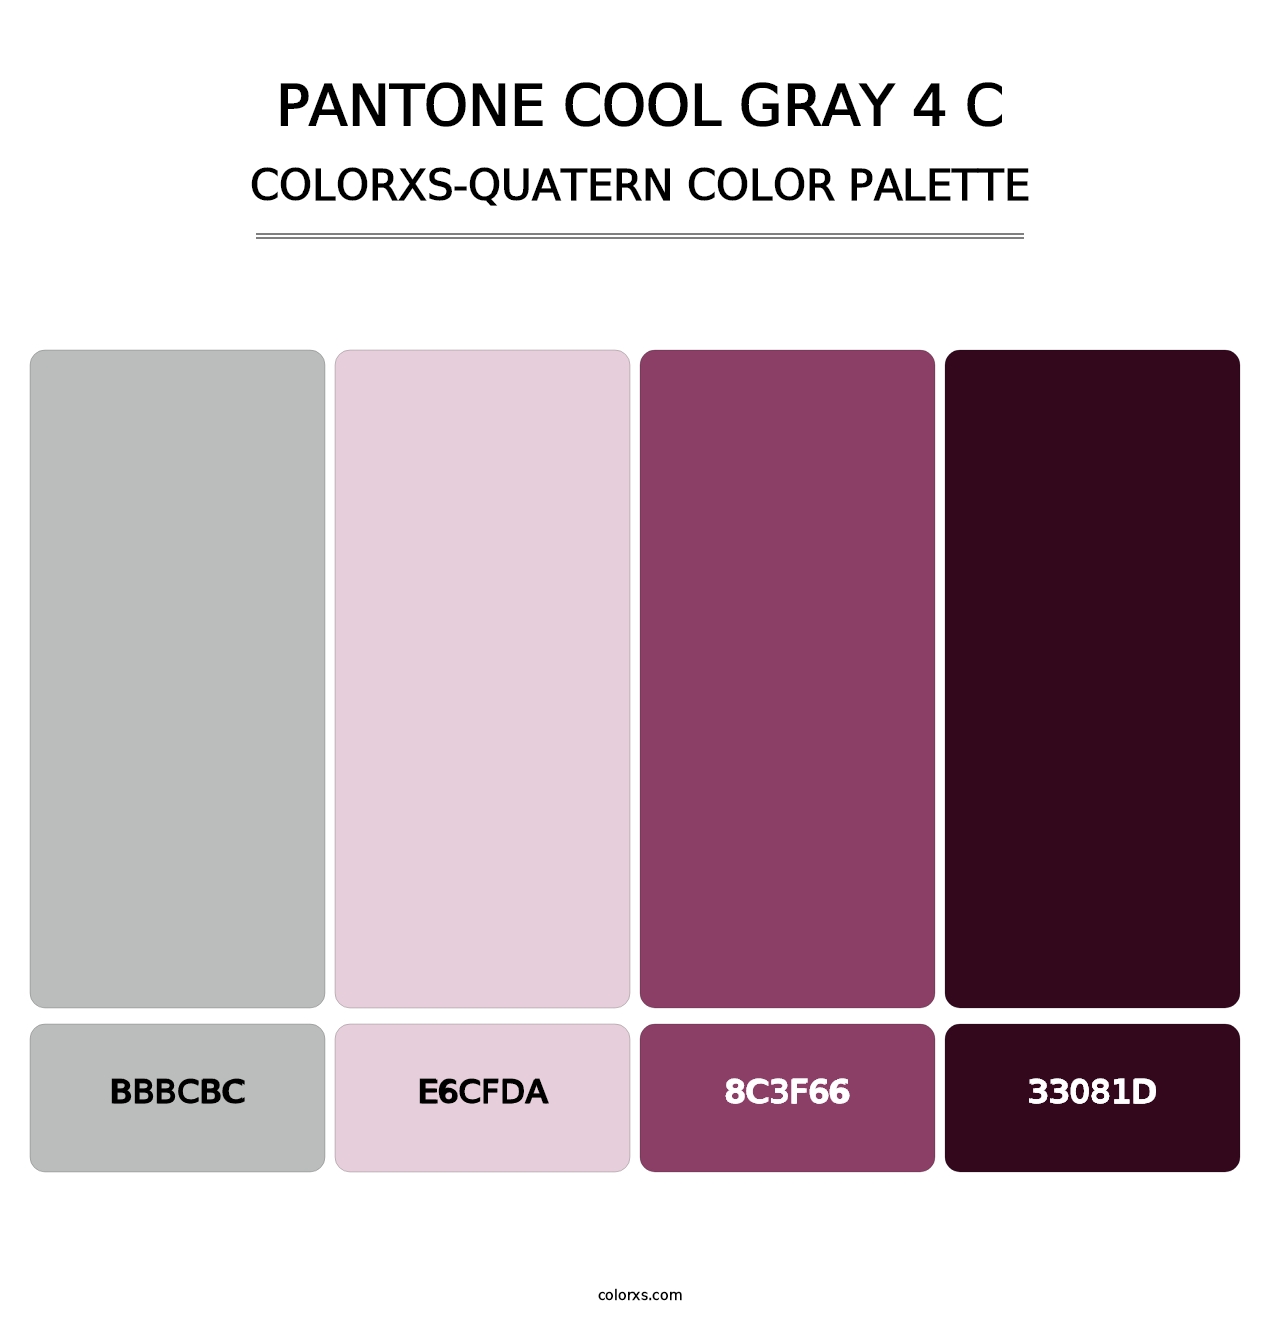 PANTONE Cool Gray 4 C - Colorxs Quatern Palette